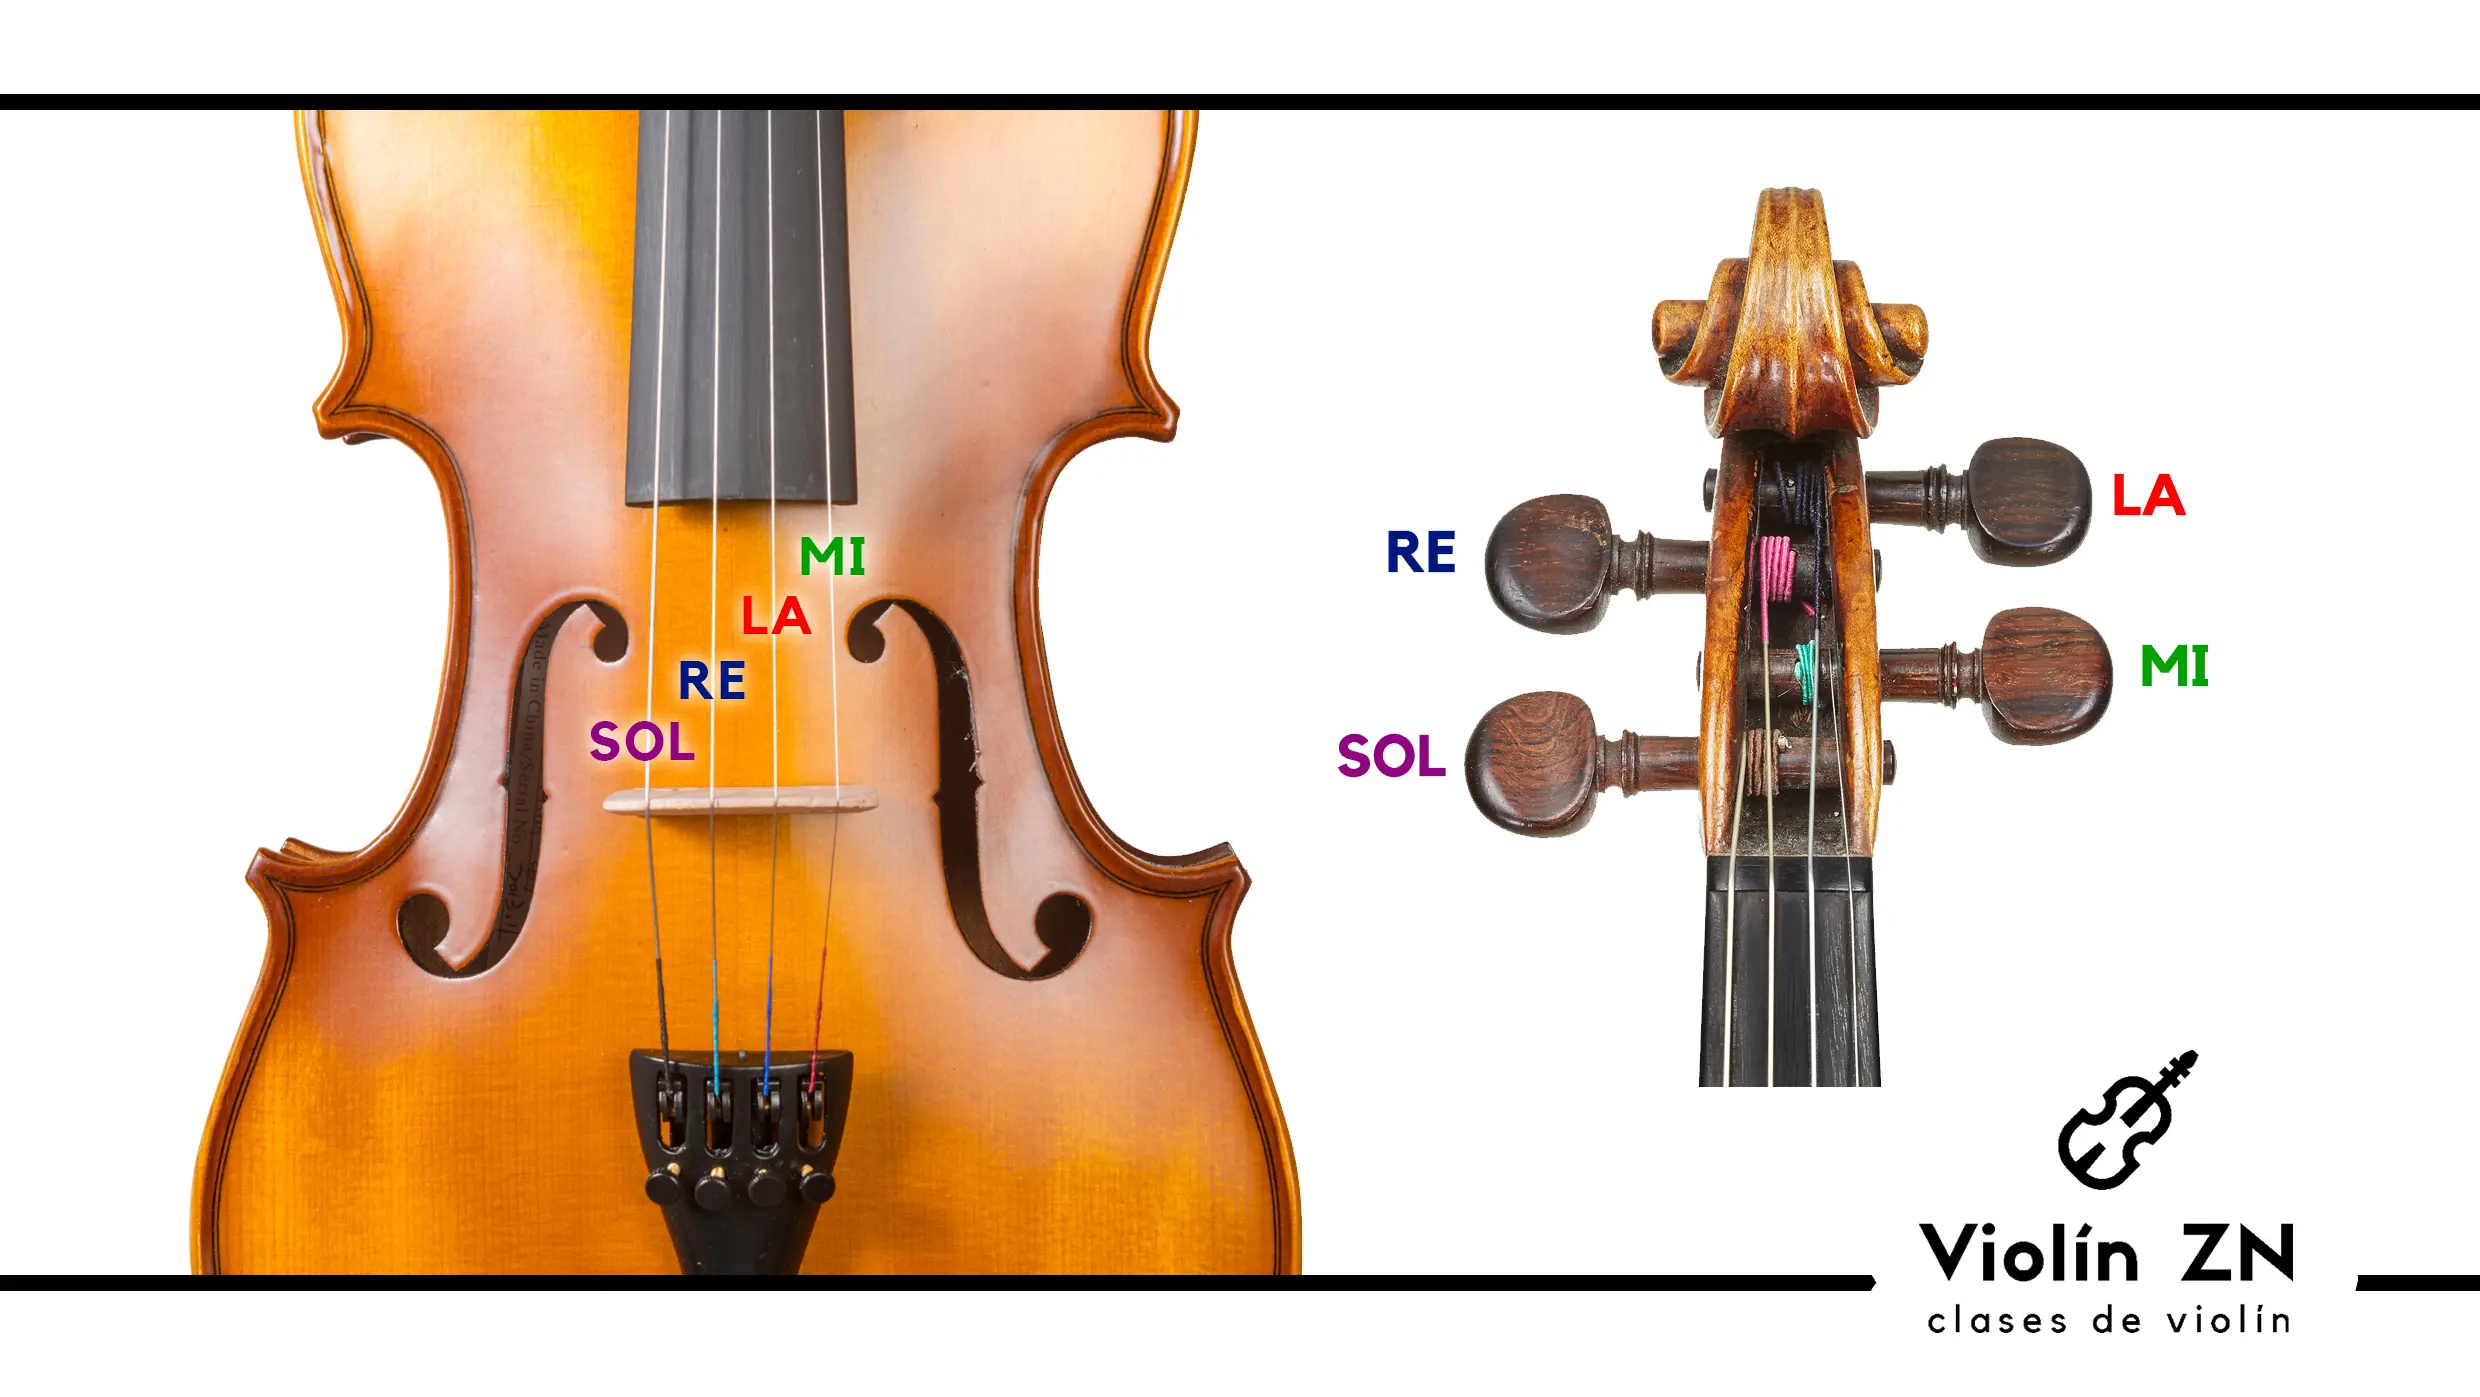 usar afinador vozzex en violin - Puedes usar un afinador para la entonación